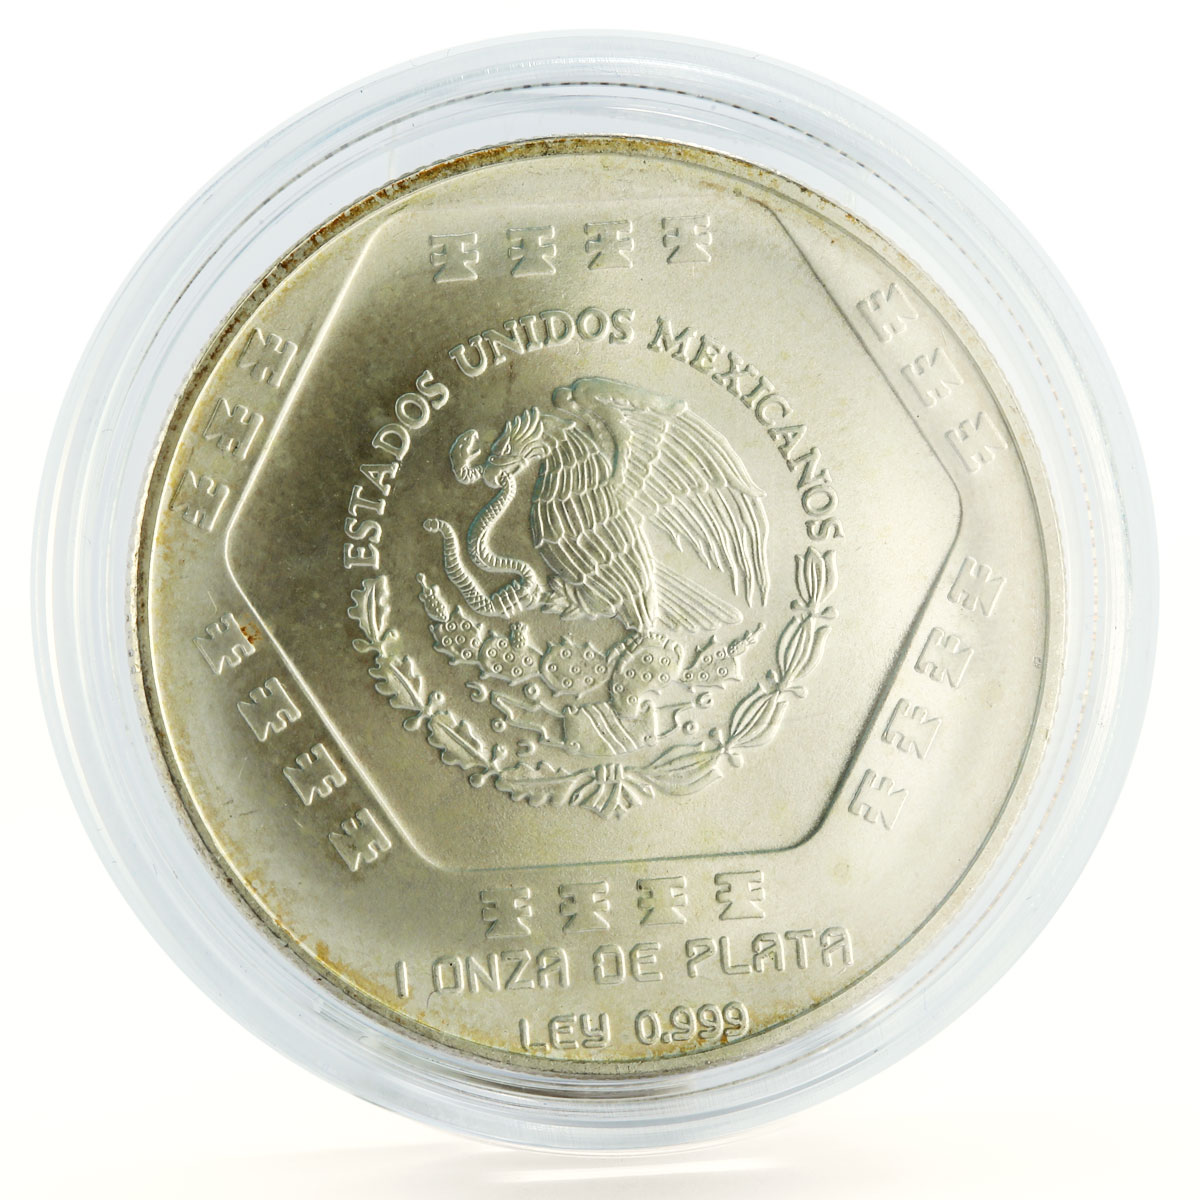 Mexico 5 pesos Precolombna series Chaac Mool silver coin 1994